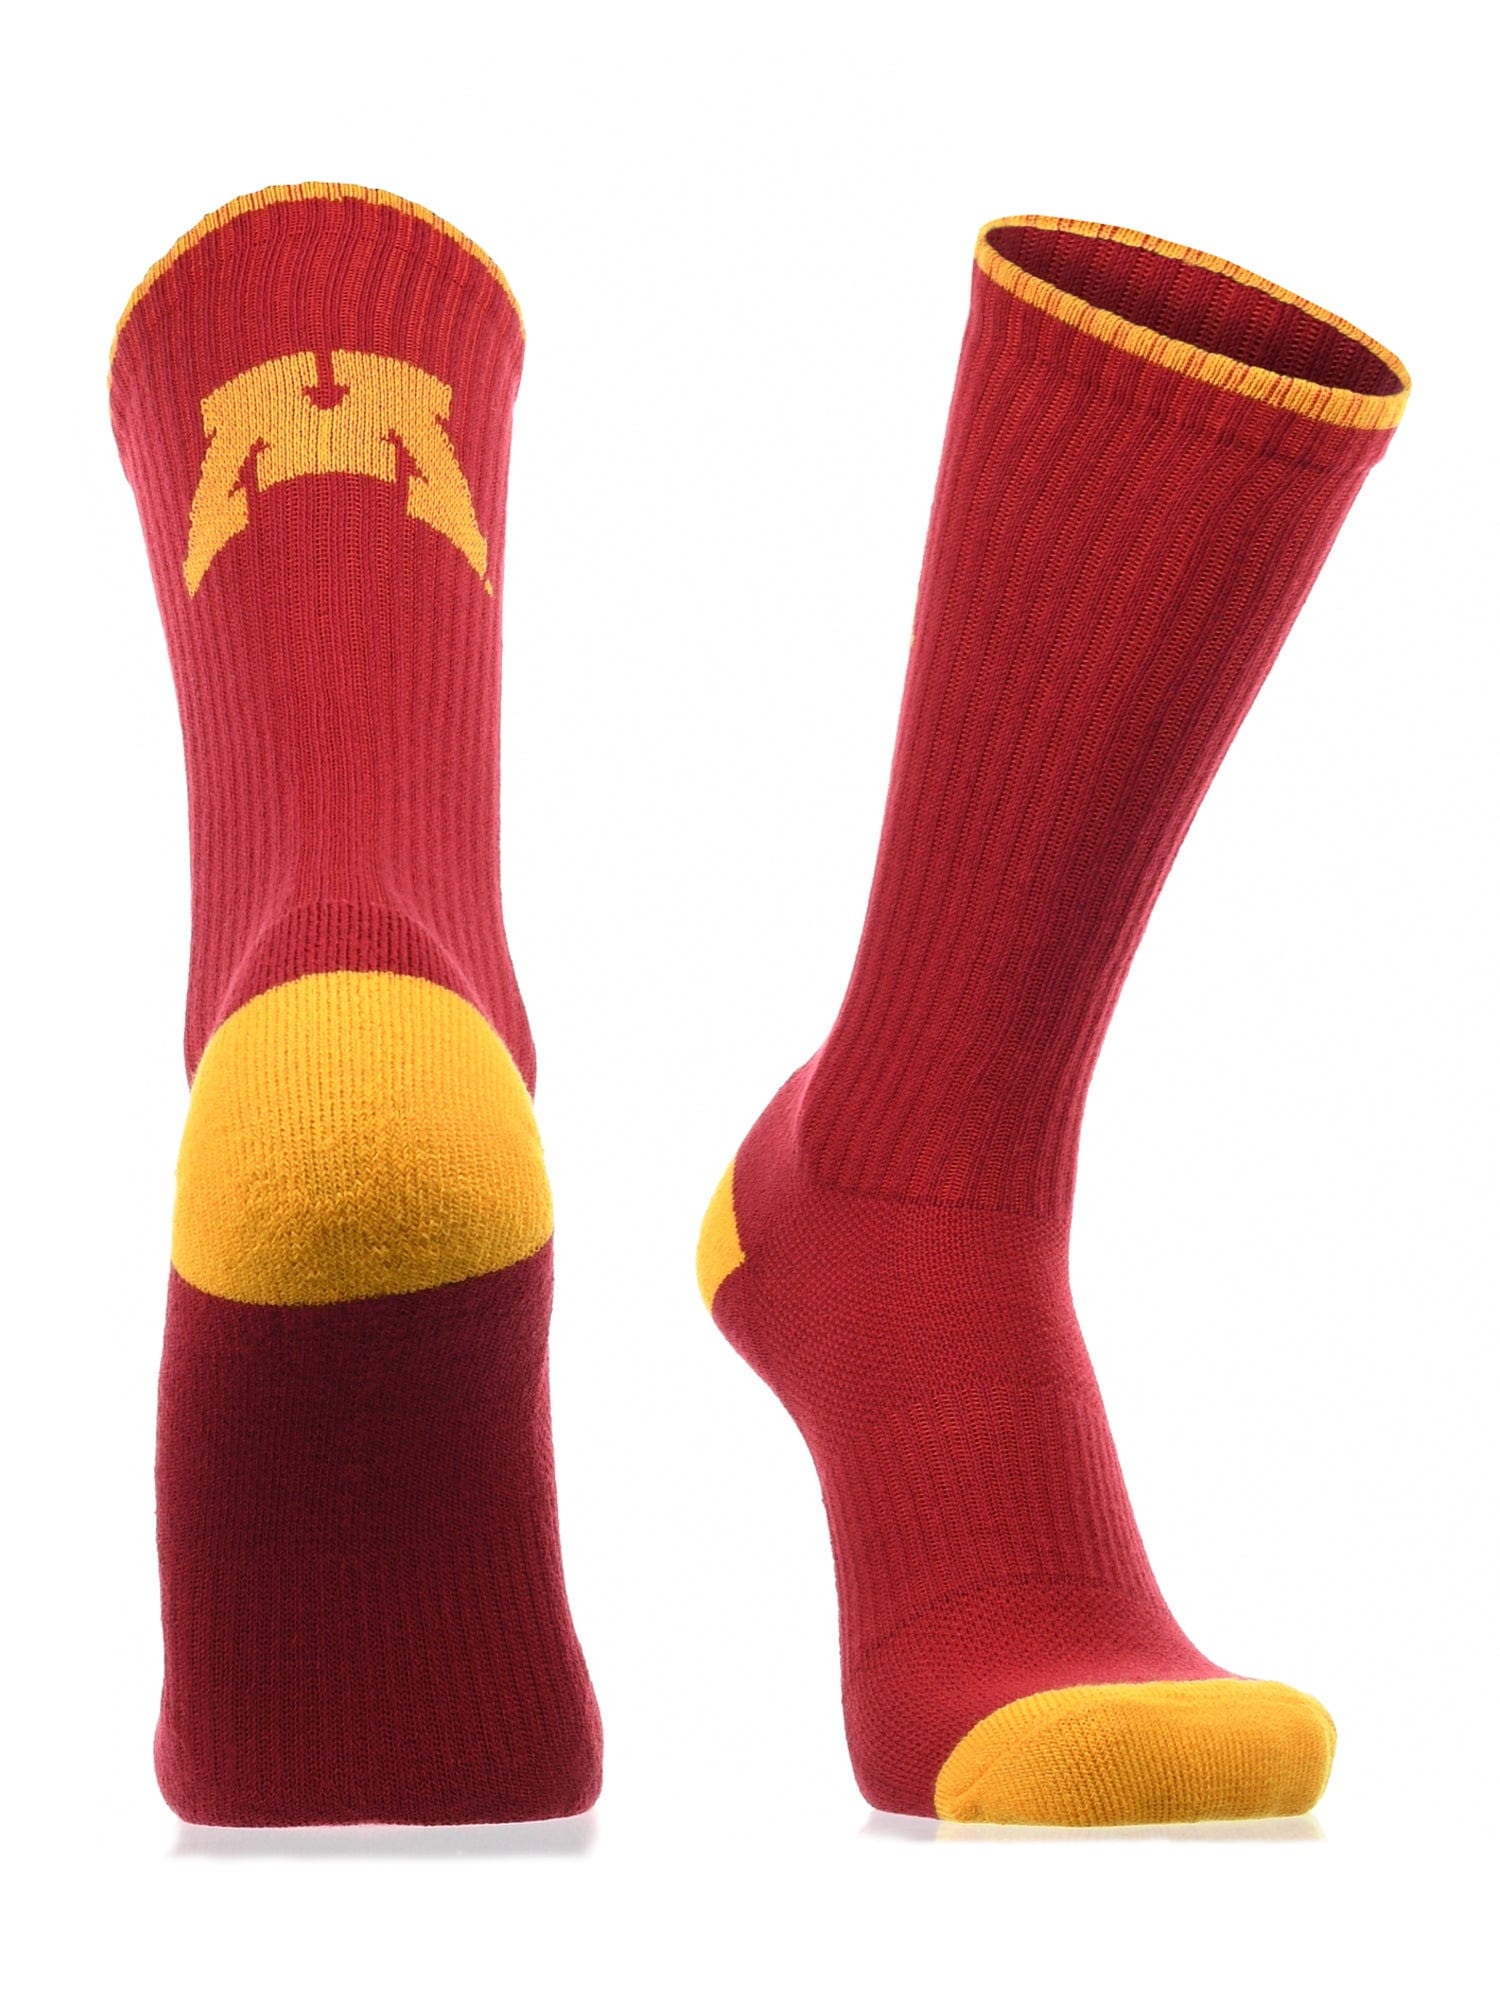 University of Minnesota Socks, Minnesota Golden Gophers Socks